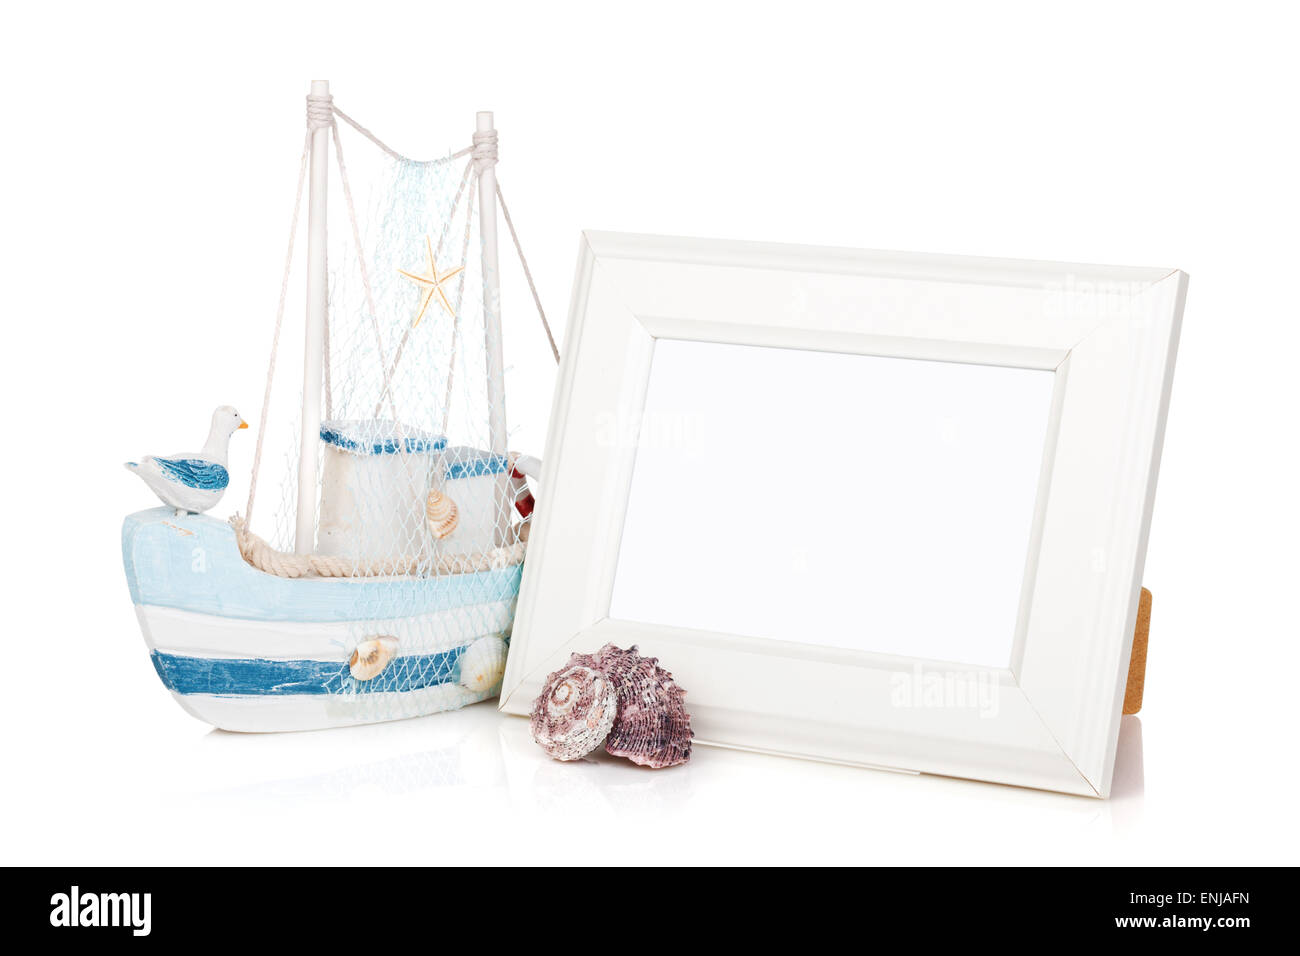 Cadre photo, un coquillage et un décor bateau. Isolé sur fond Banque D'Images